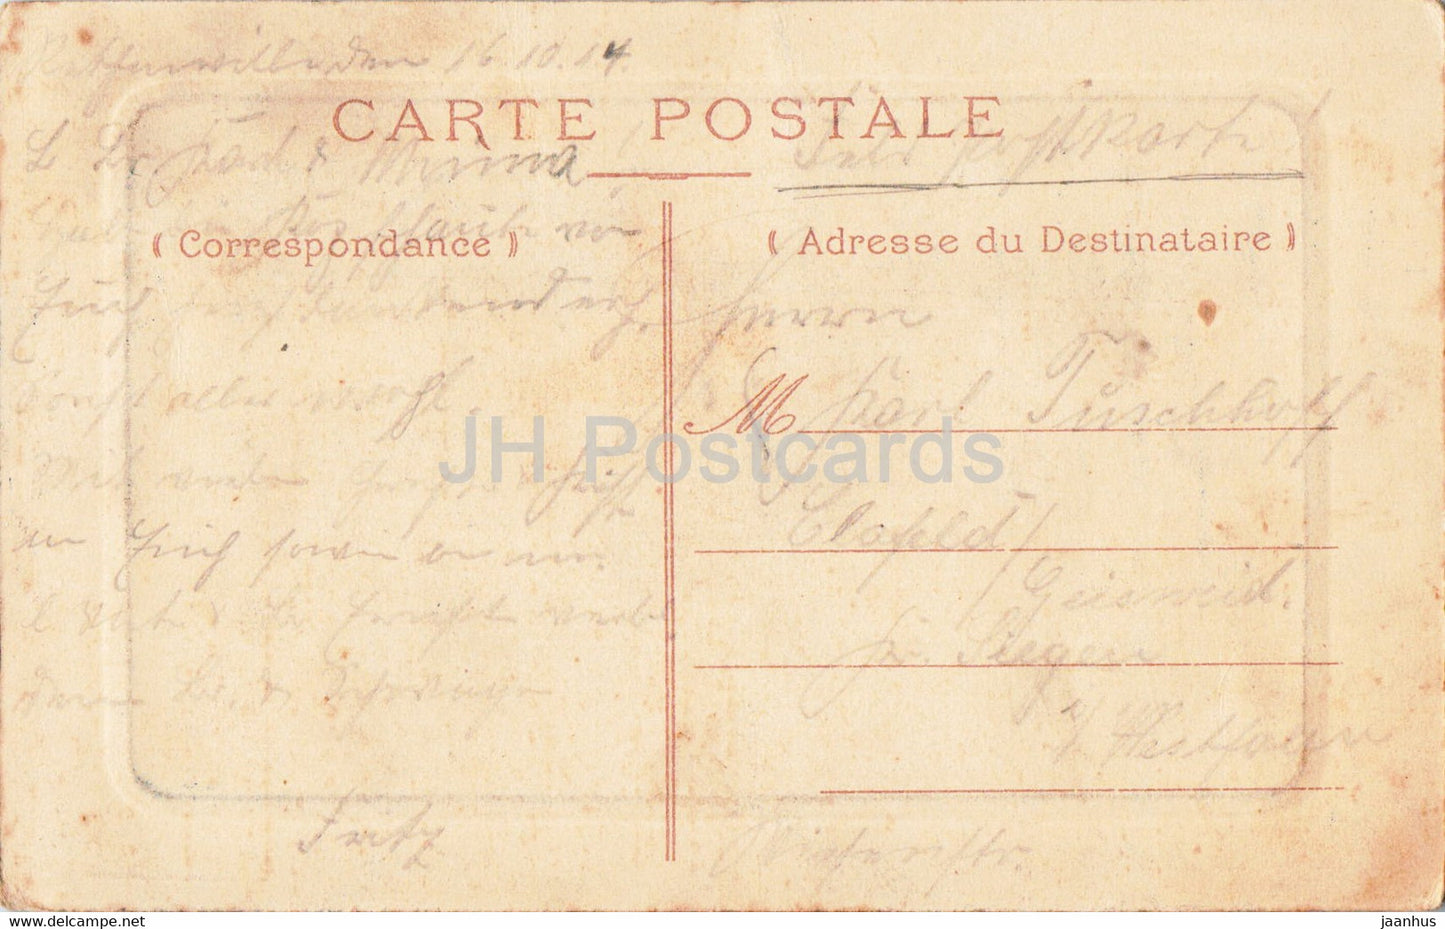 Boulogne sur Mer - Calle des Pecheurs - navire - bateau - carte postale ancienne - 1917 - France - occasion